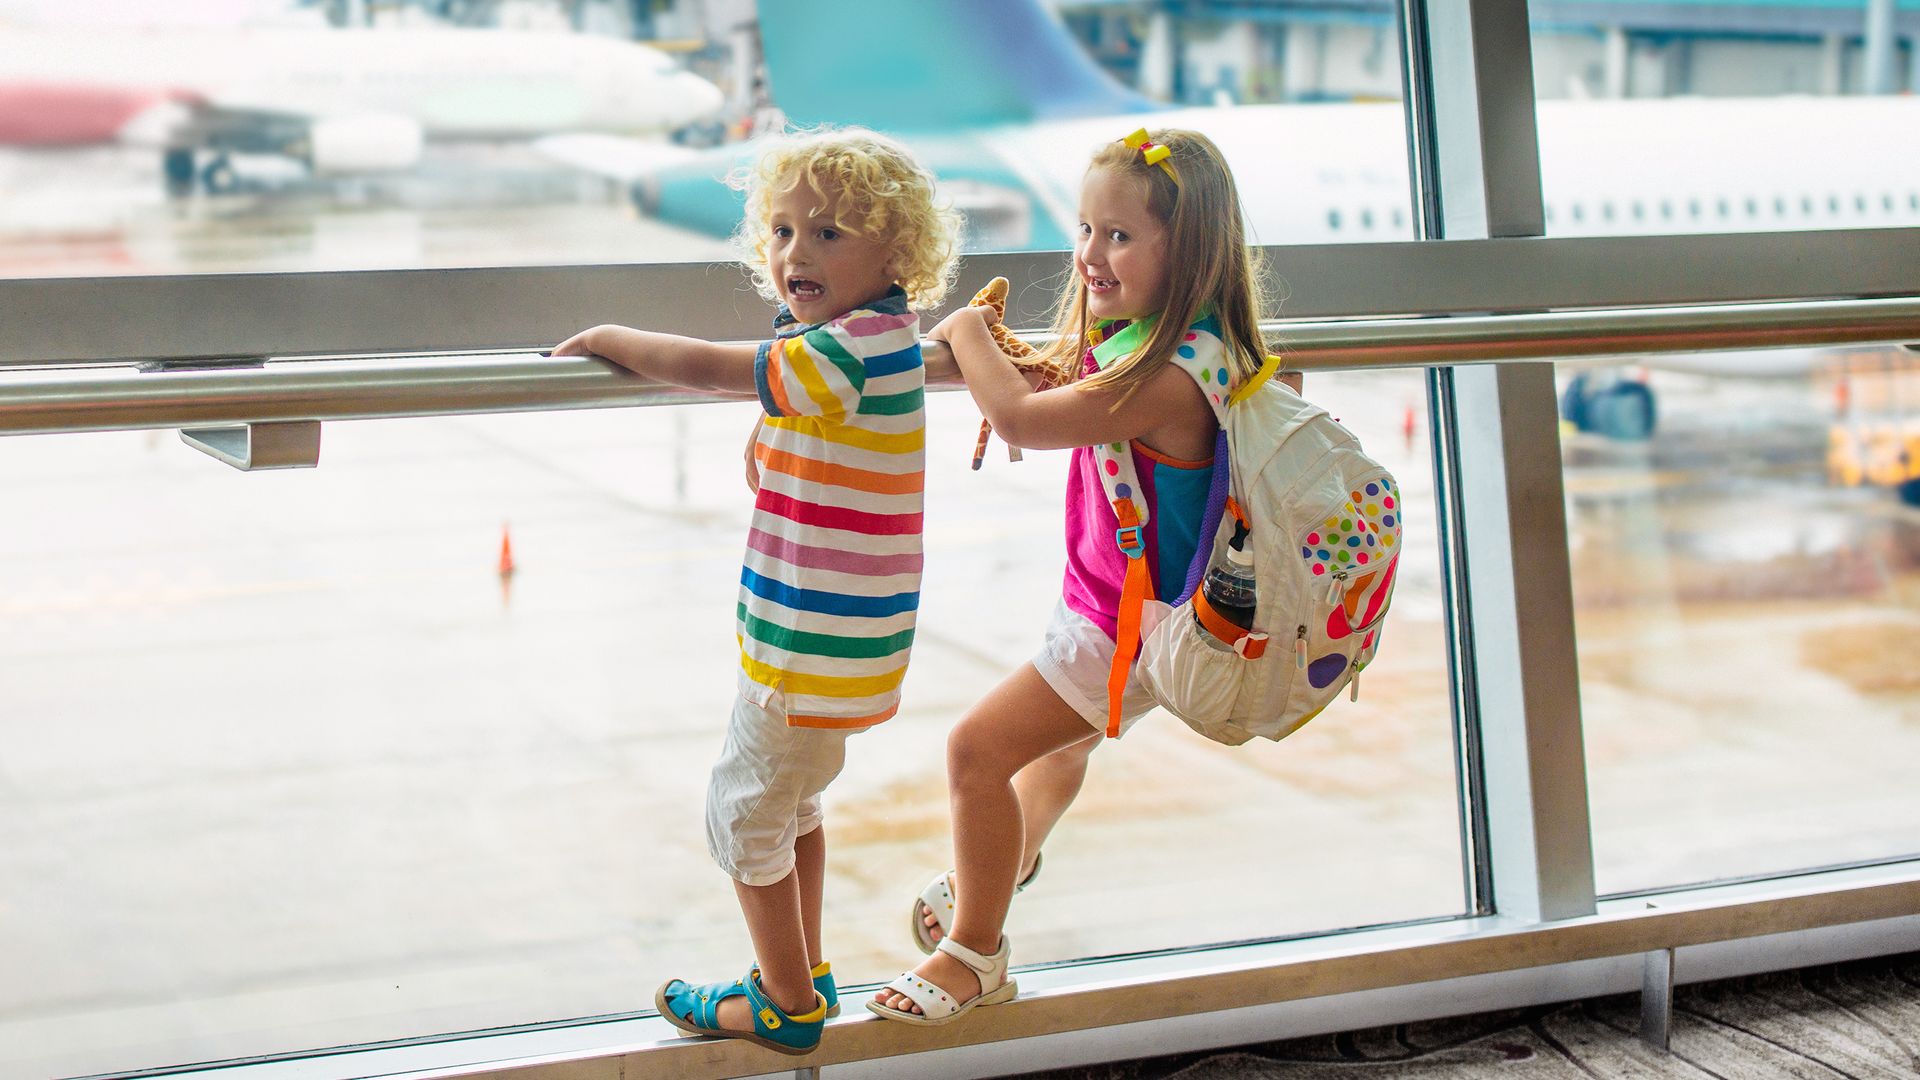 Kids' screen-free plane activities